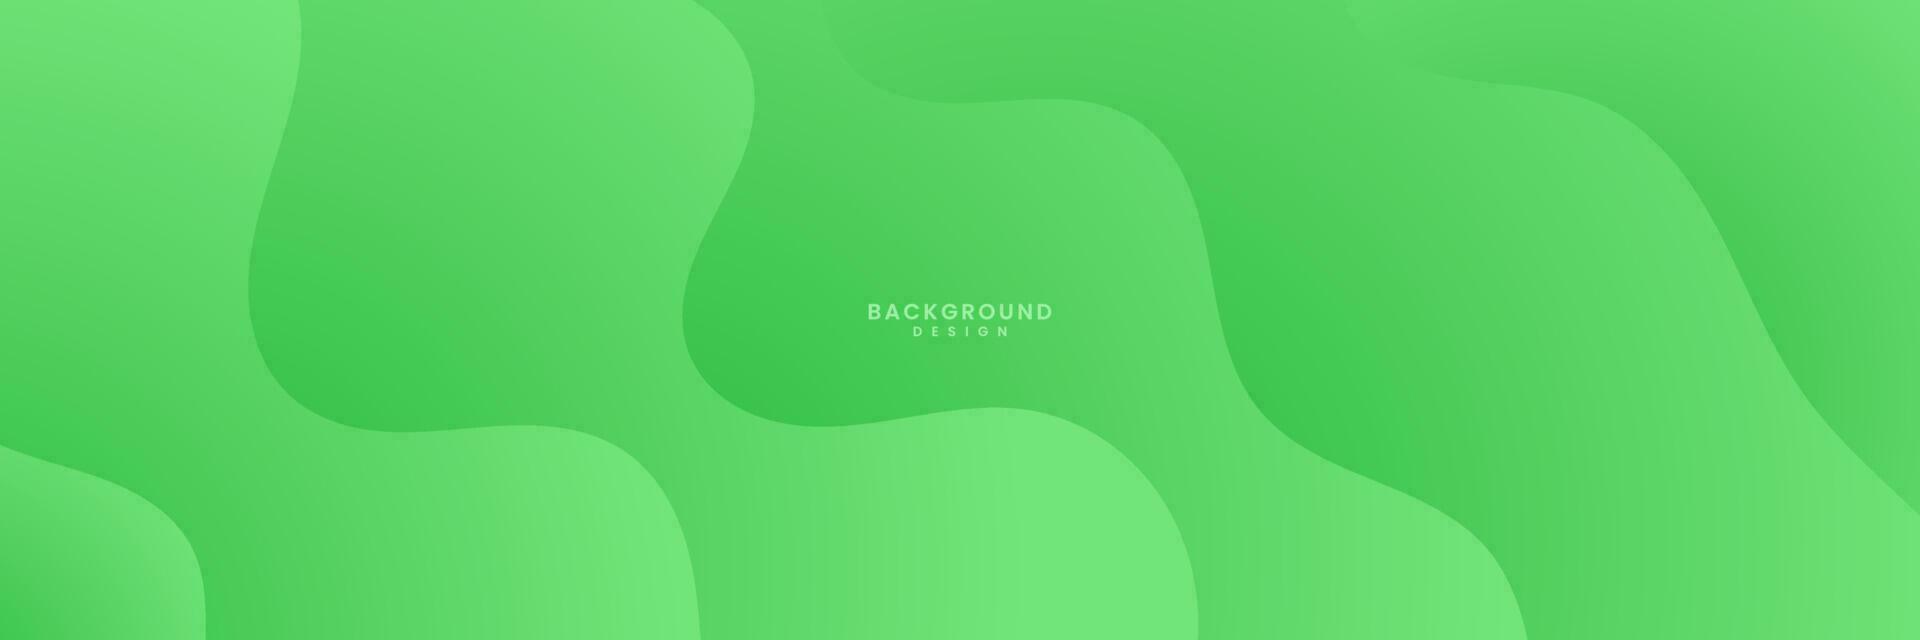 abstrakt grön färgrik lutning bakgrund vektor illustration